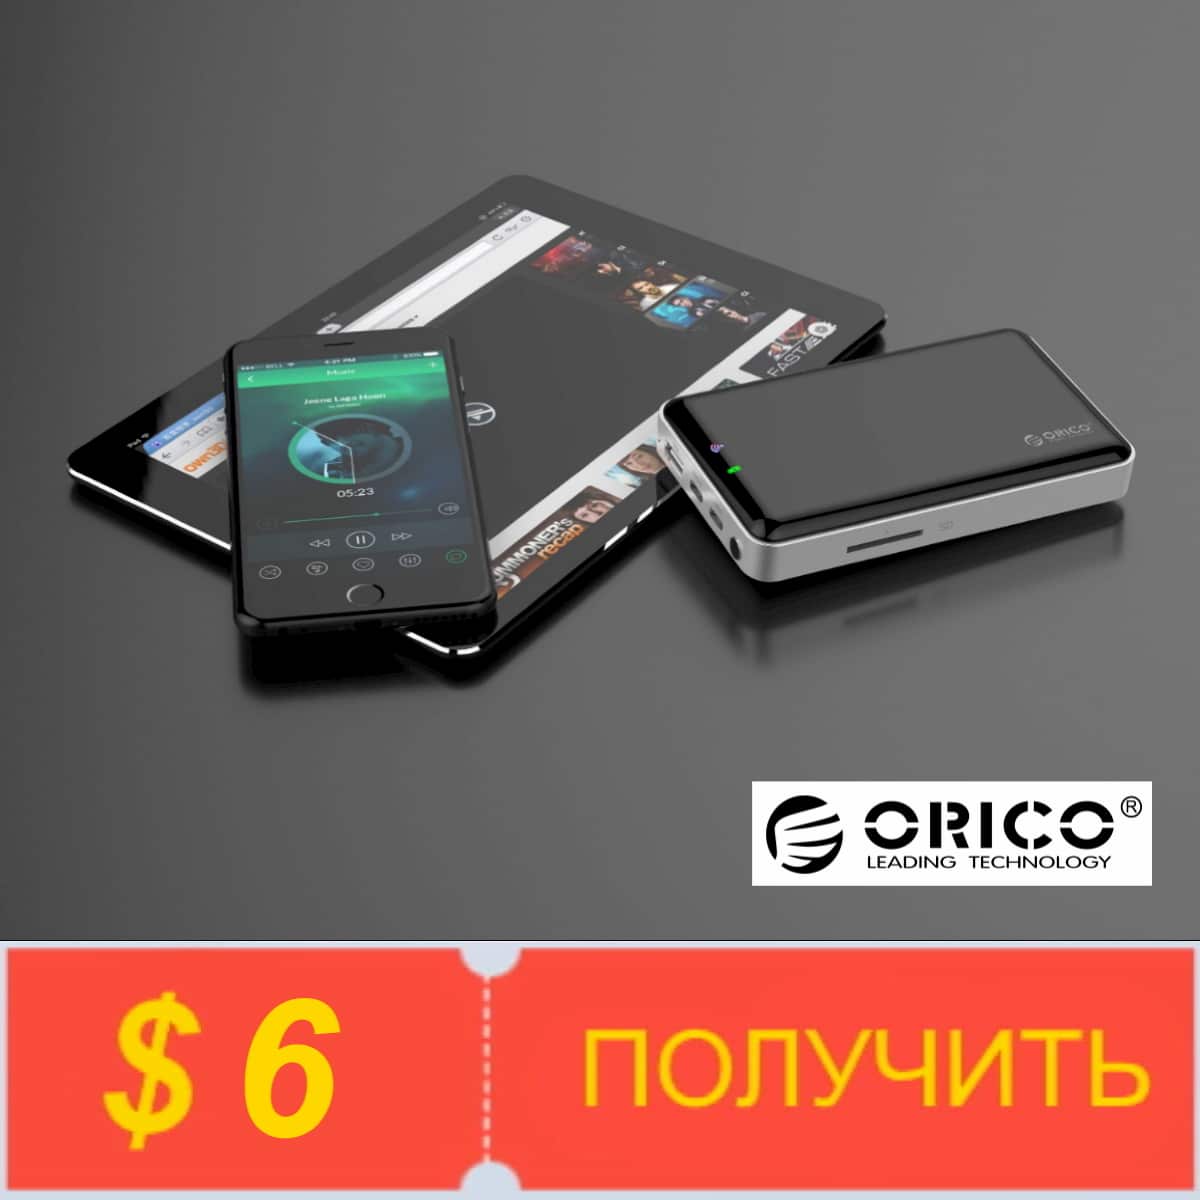 Получить купоны от Orico Official Store на Алиэкспресс